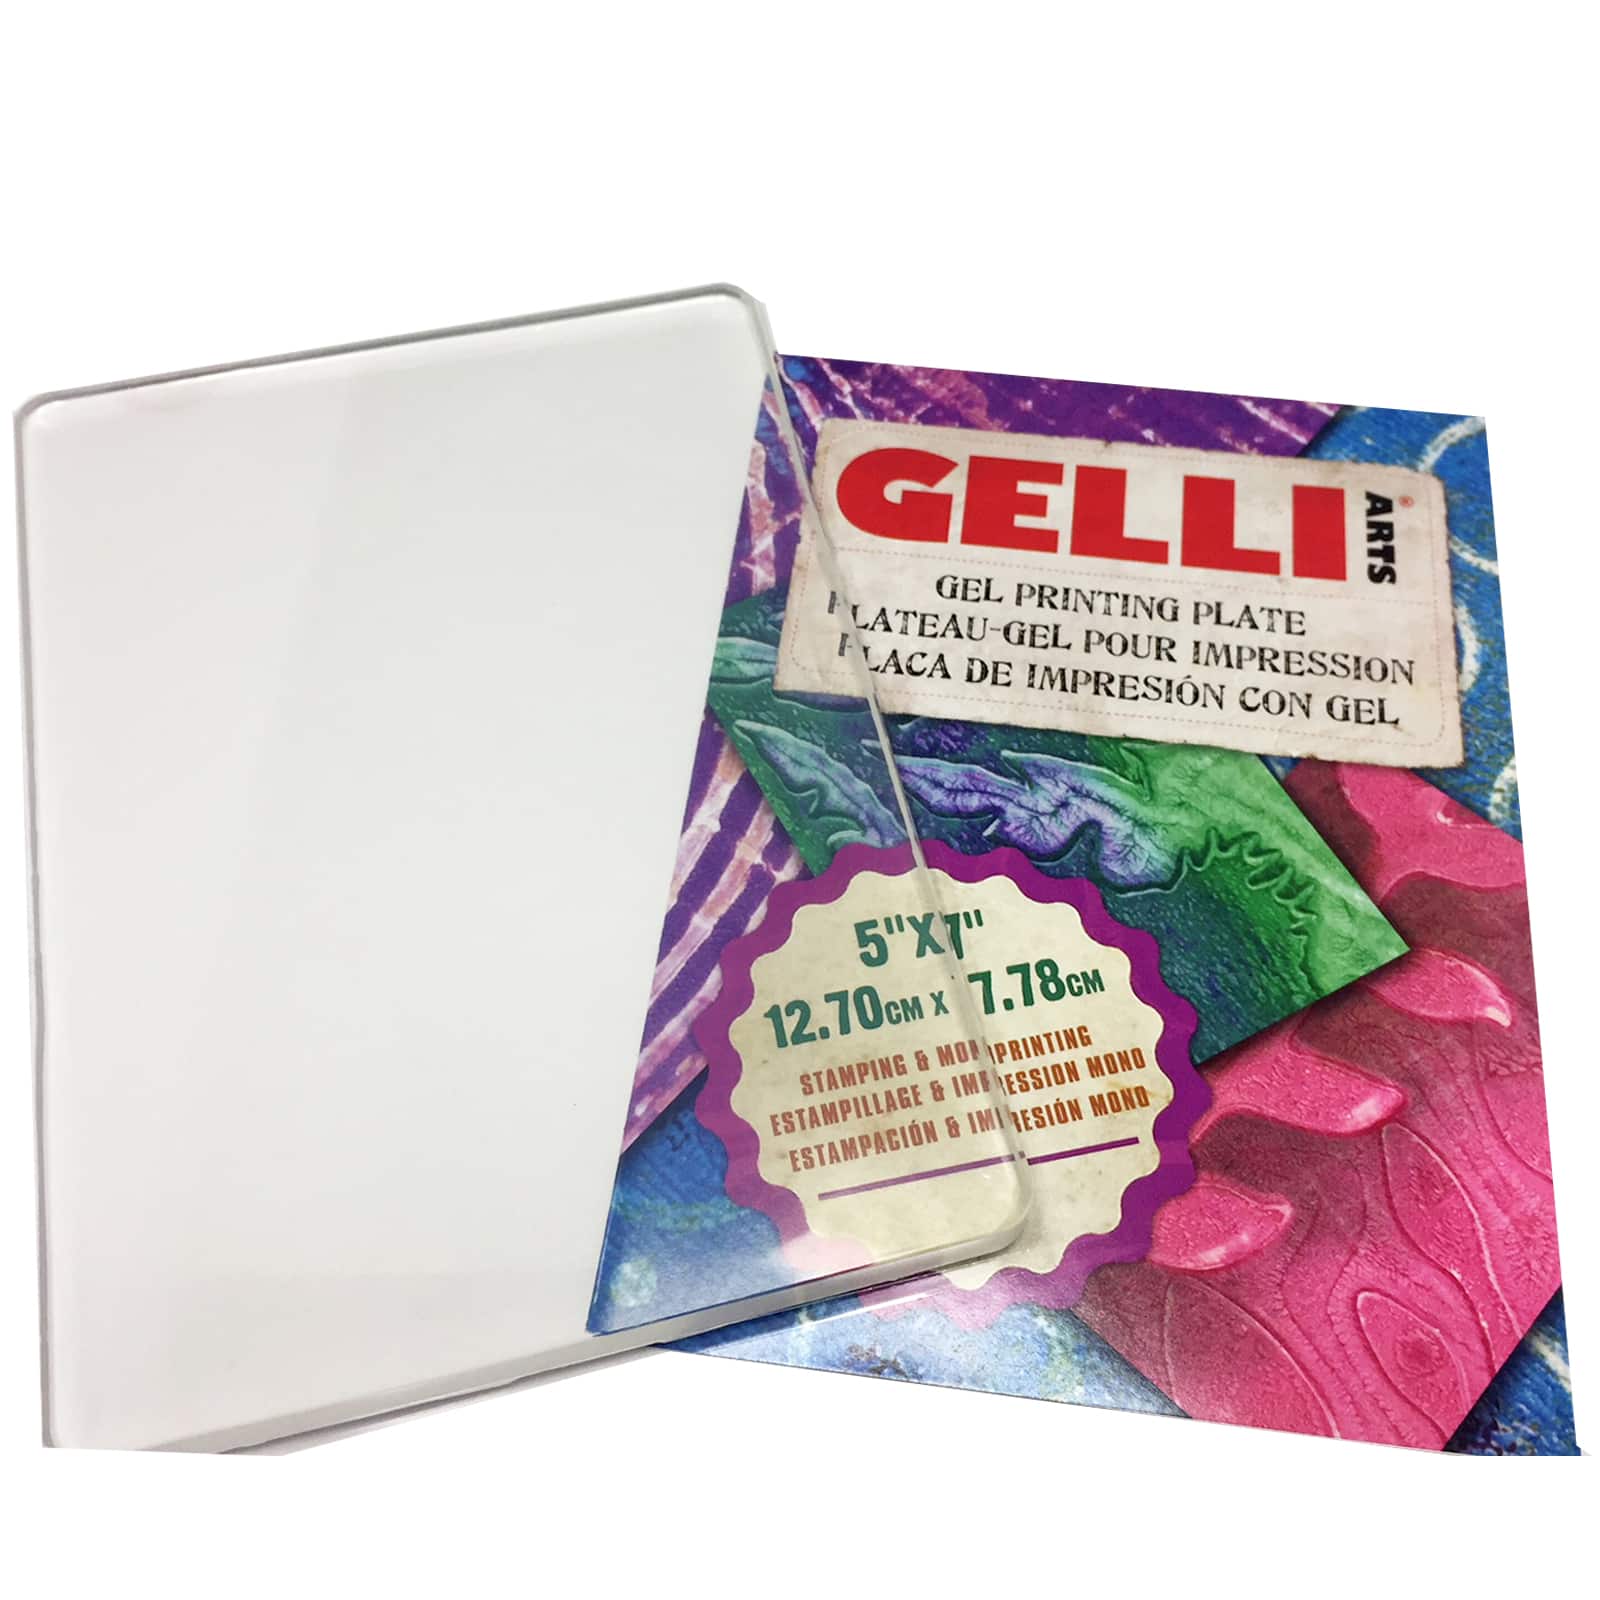 Gelli Arts 5 x 7 Gel Printing Plate